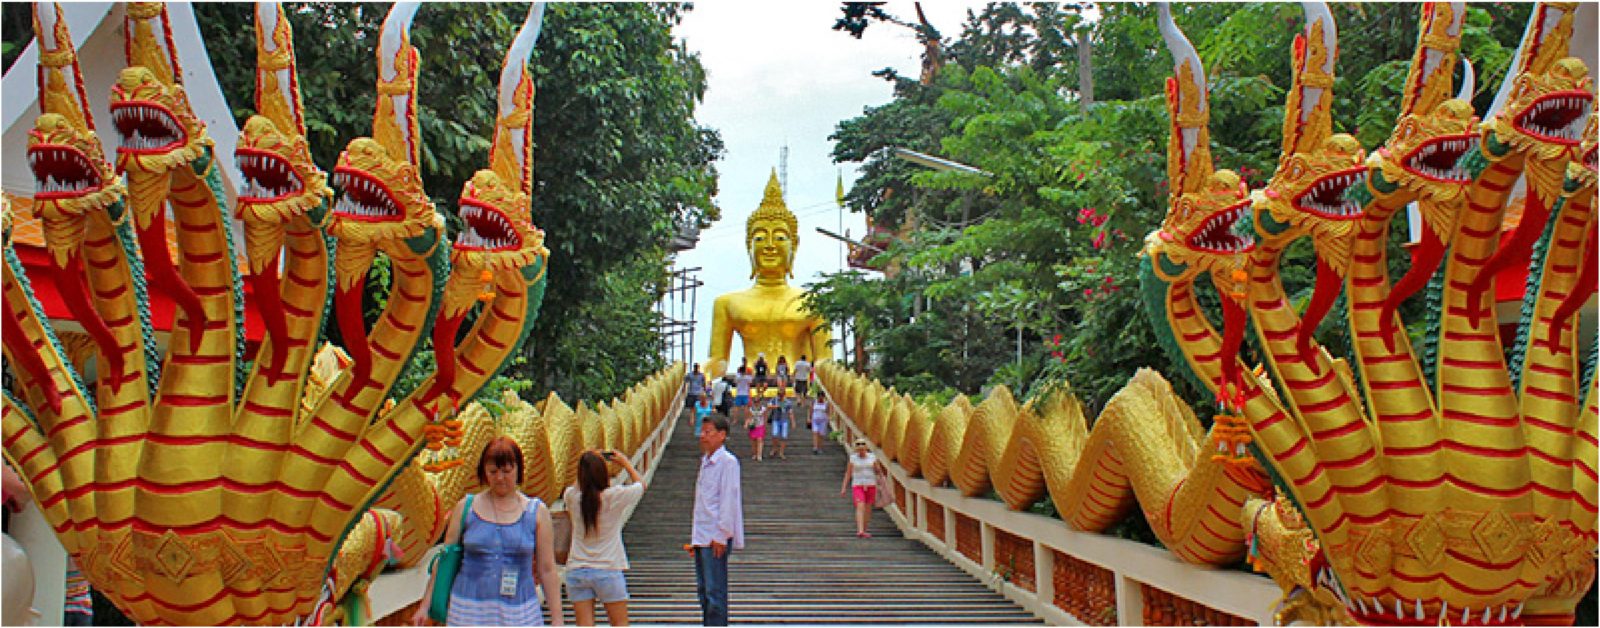 Wat Phra Khao Yai (Big Buddha Hill)